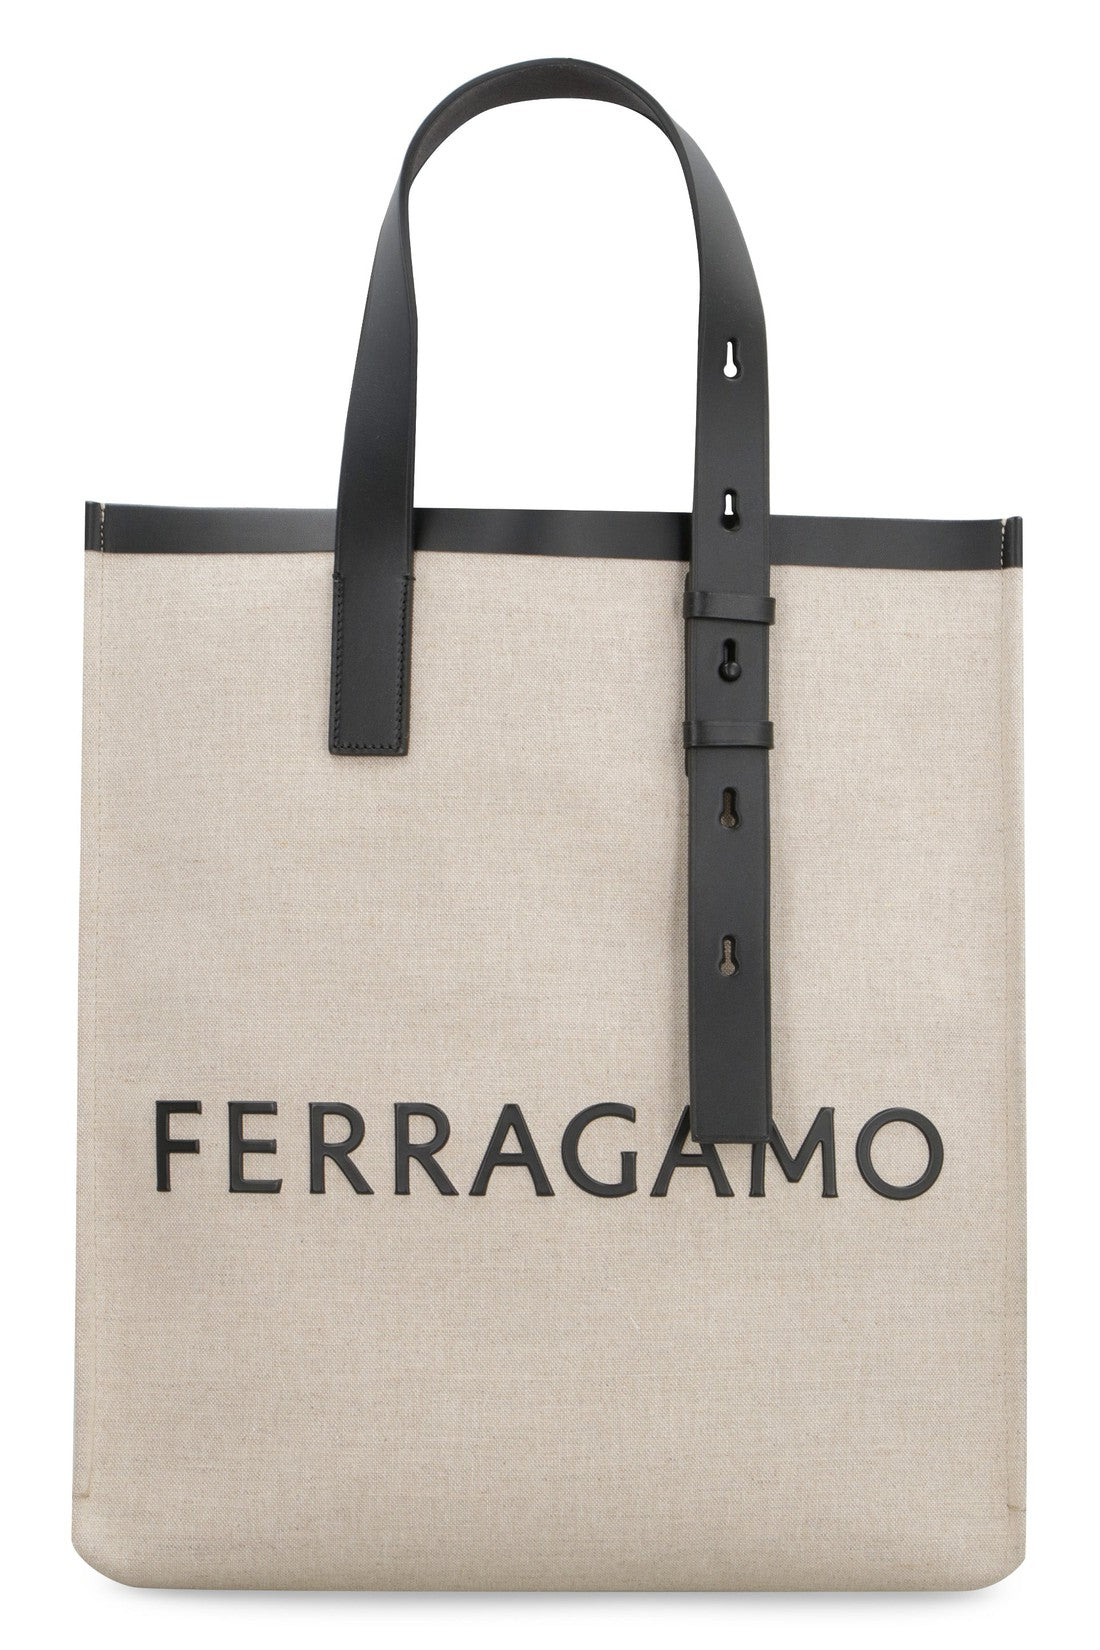 FERRAGAMO-OUTLET-SALE-Canvas tote bag-ARCHIVIST